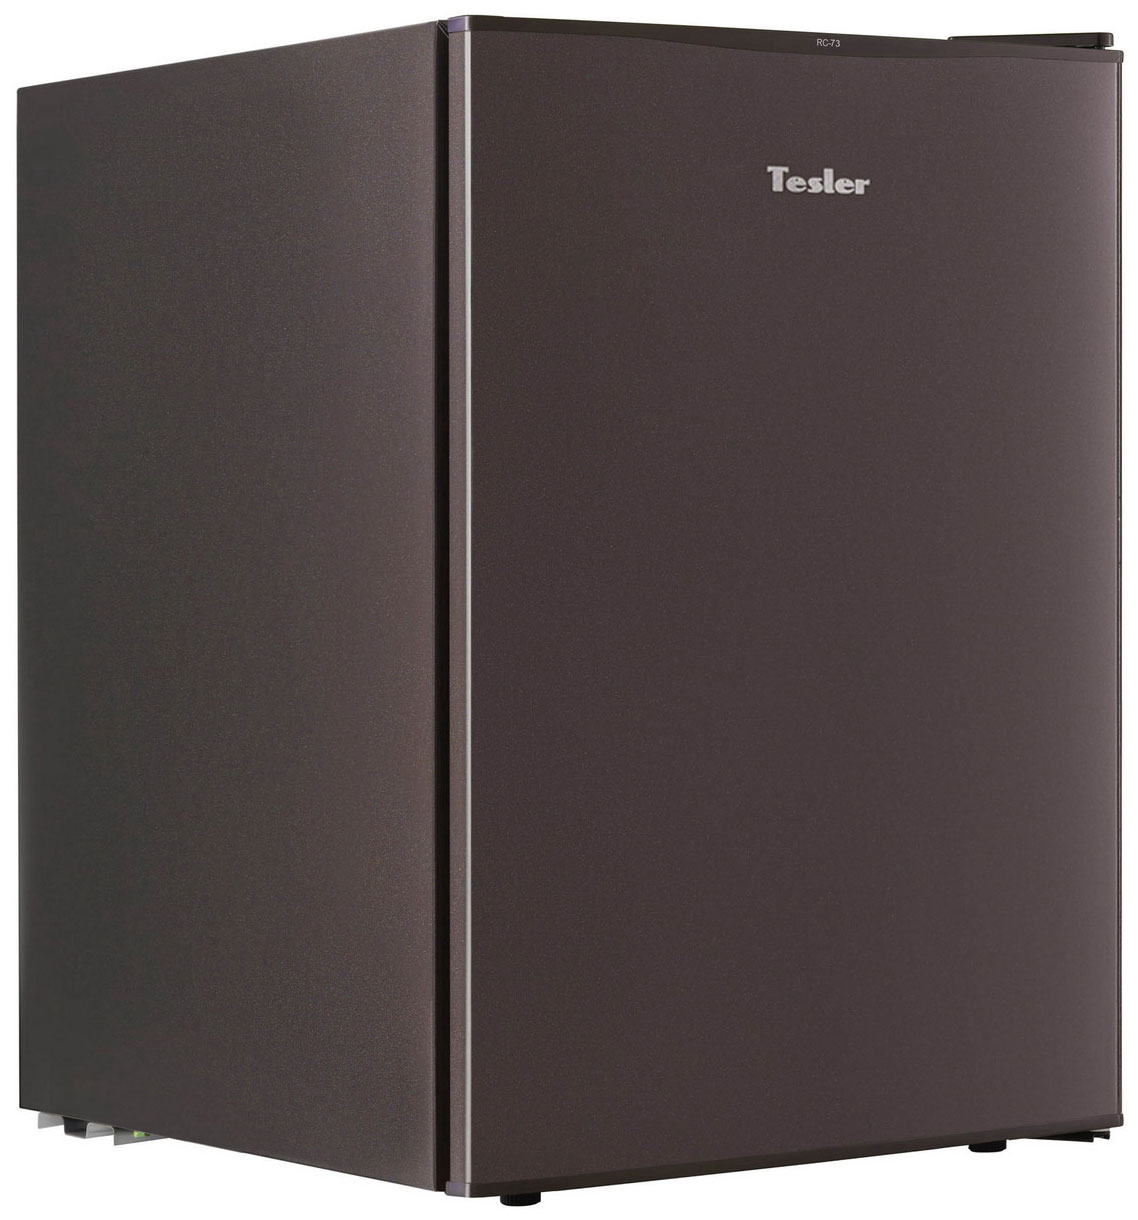 Минихолодильник TESLER RC-73 DARK BROWN двухкамерный холодильник tesler rct 100 dark brown